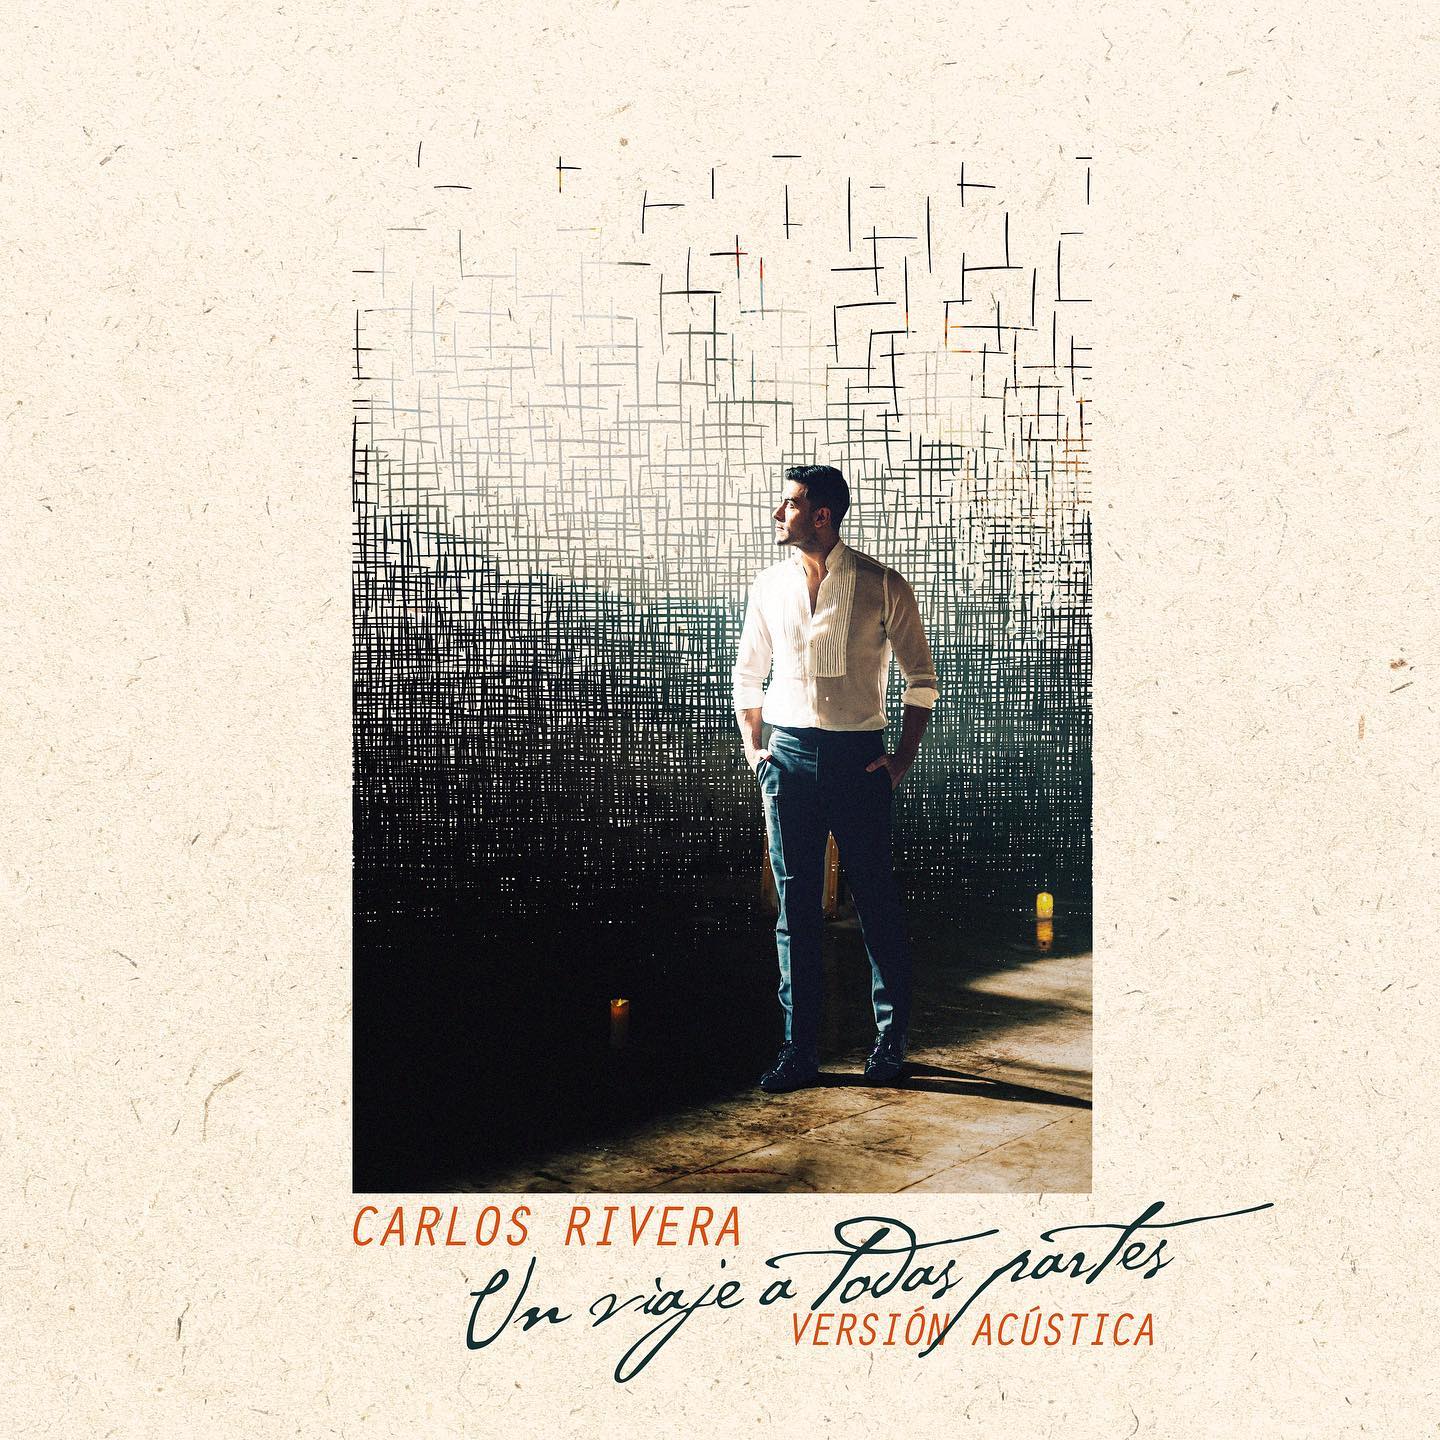 Carlos Rivera lanzó “Un viaje a todas partes”, su nuevo sencillo